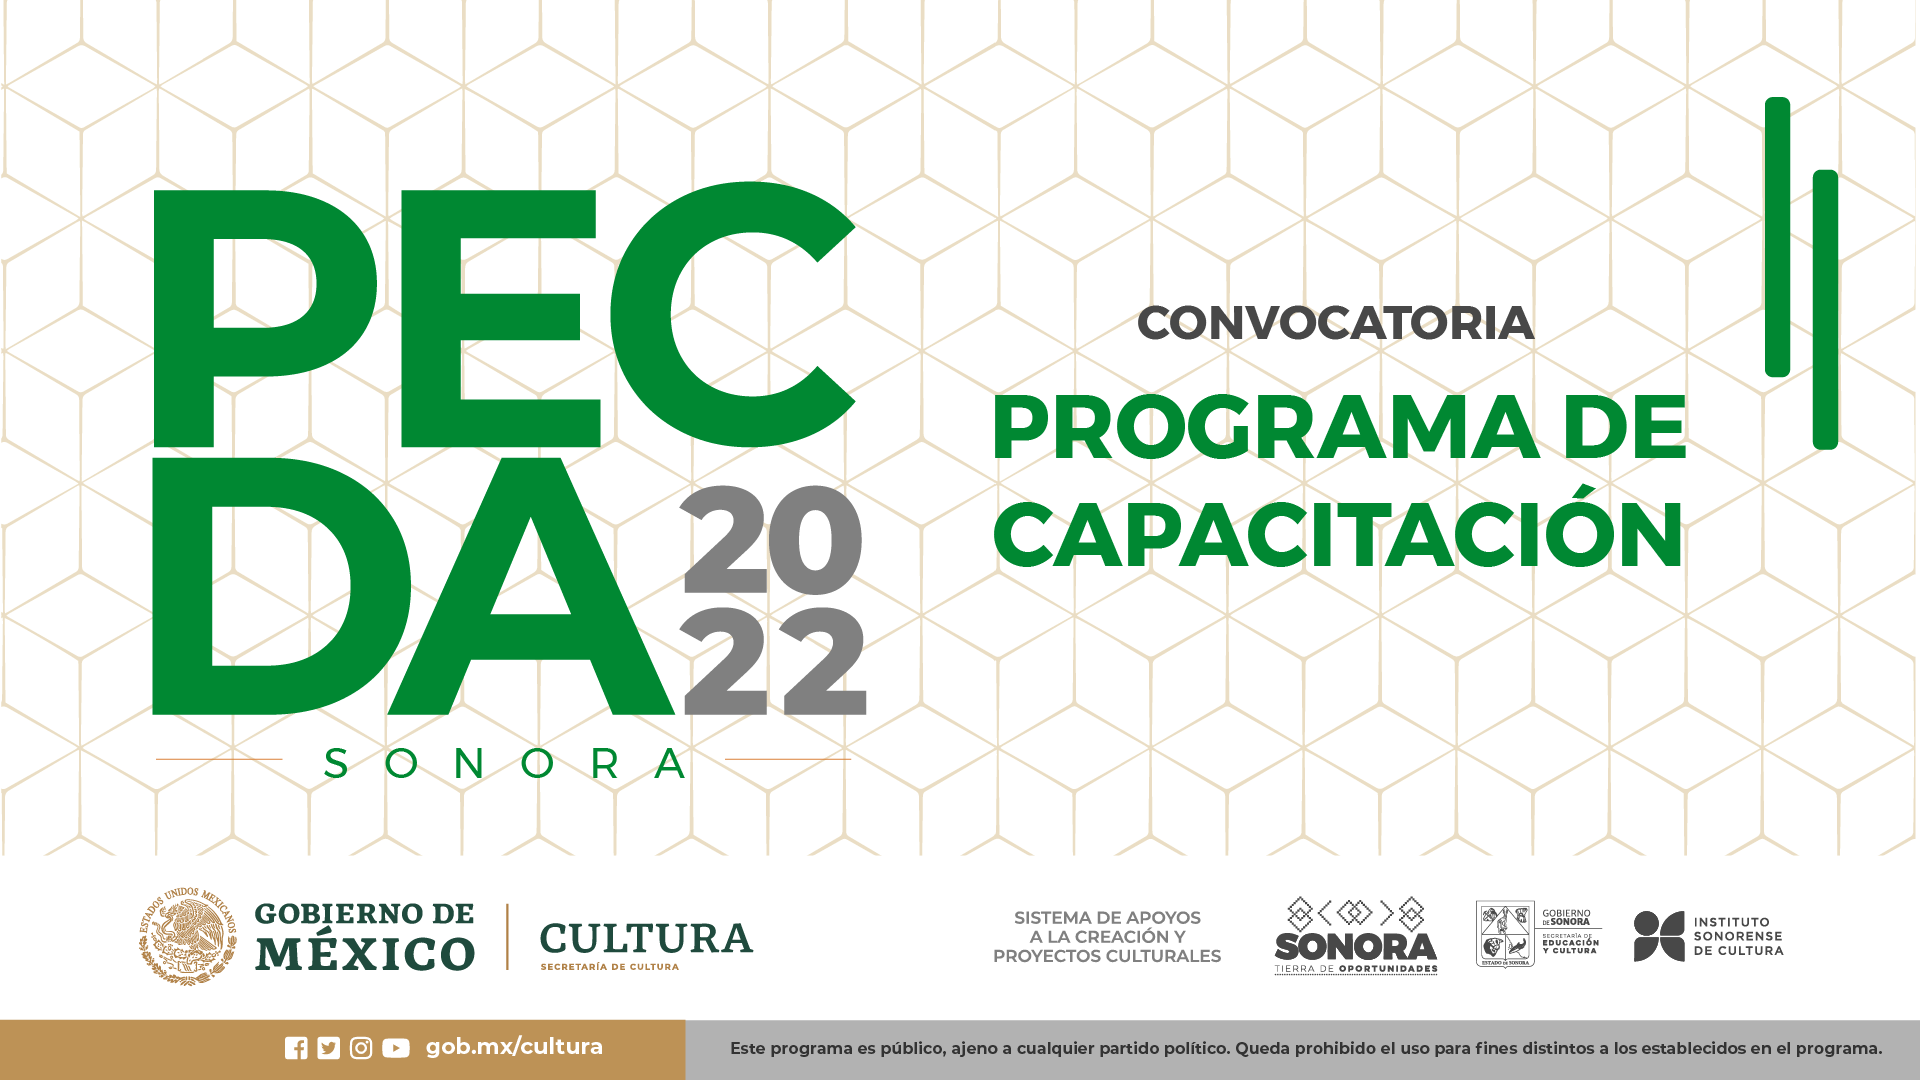 PECDA 2022 Convocatoria Programa de Capacitación